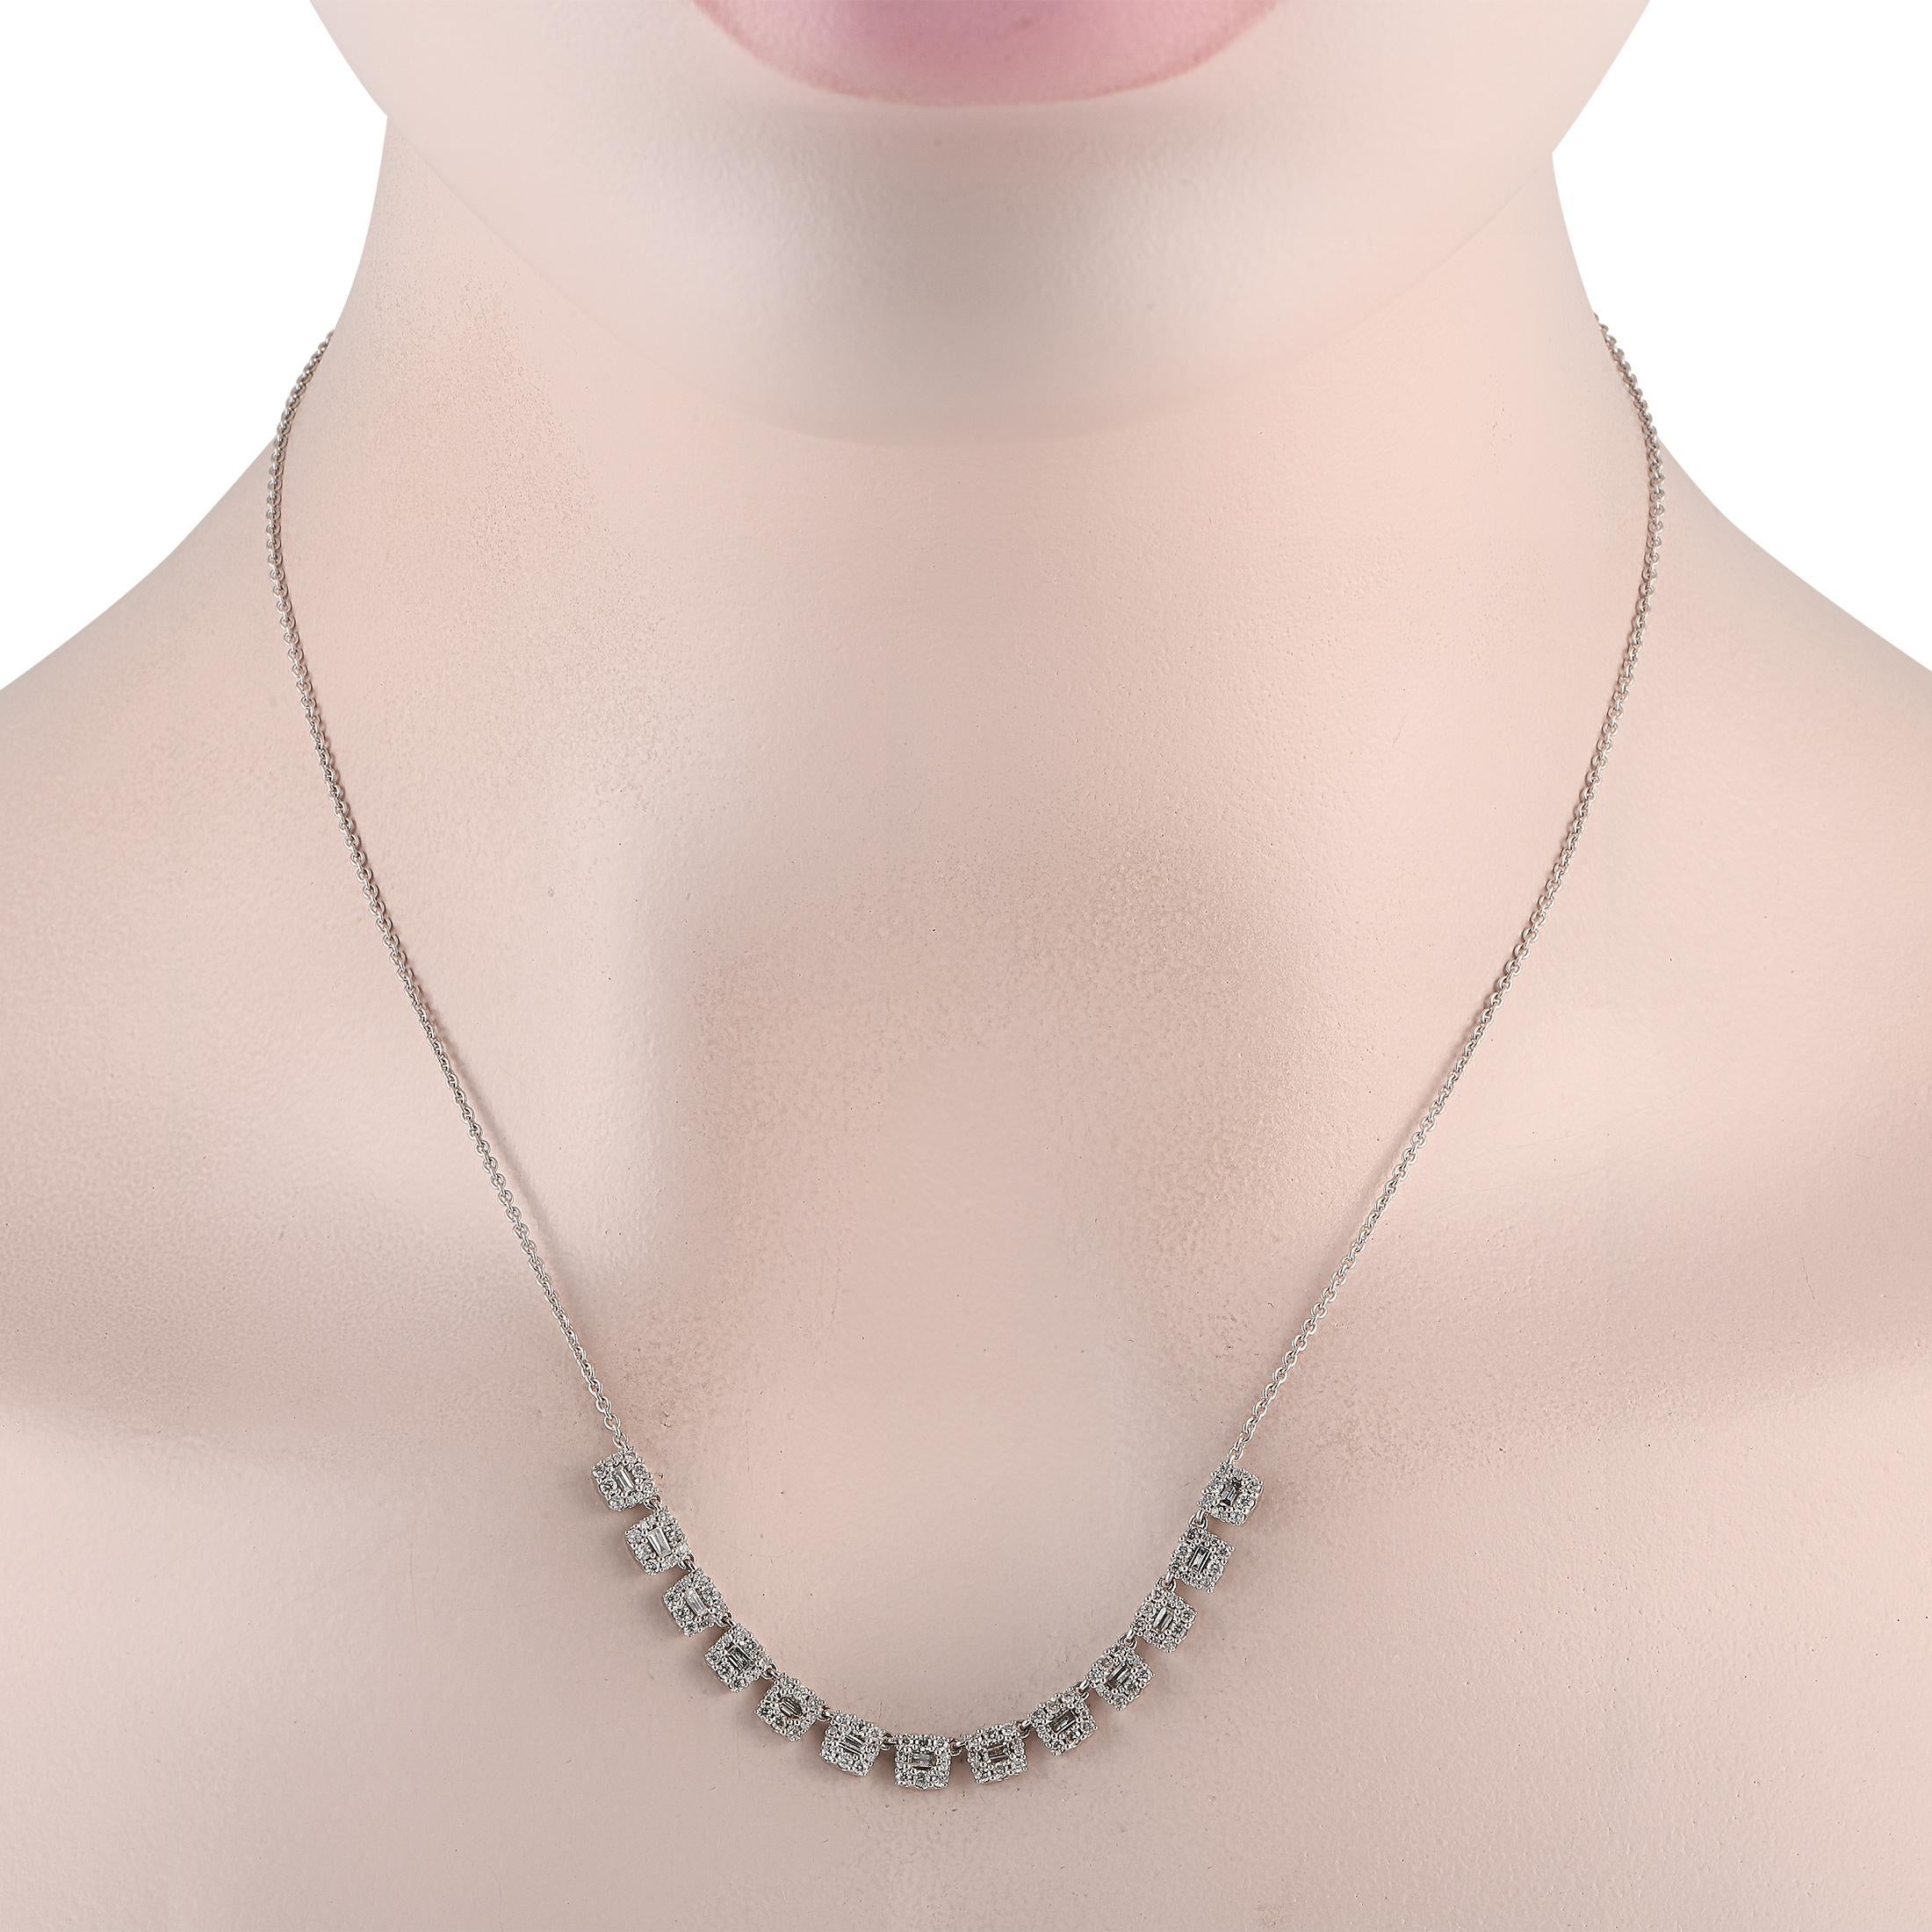 Voici un collier moderne à franges en diamant pour vous aider à garder votre jeu d'accessoirisation intéressant et frais. Cette pièce en or blanc présente une série de franges courtes et de forme carrée qui se suspendent à la chaîne. Chaque frange